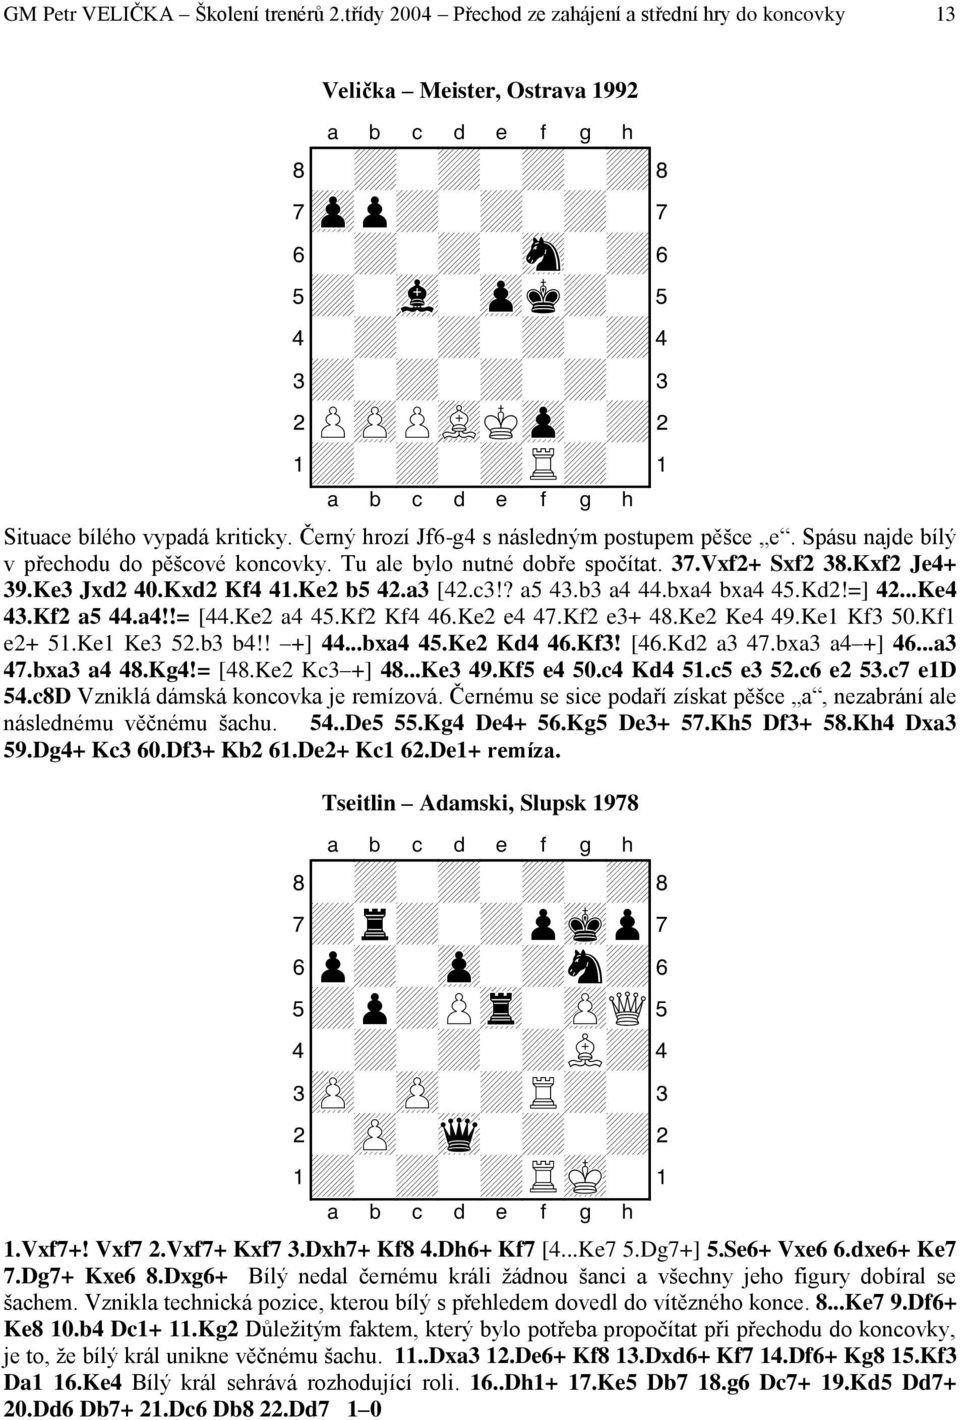 Situace bílého vypadá kriticky. Černý hrozí Jf6-g4 s následným postupem pěšce e. Spásu najde bílý v přechodu do pěšcové koncovky. Tu ale bylo nutné dobře spočítat. 37.Vxf2+ Sxf2 38.Kxf2 Je4+ 39.